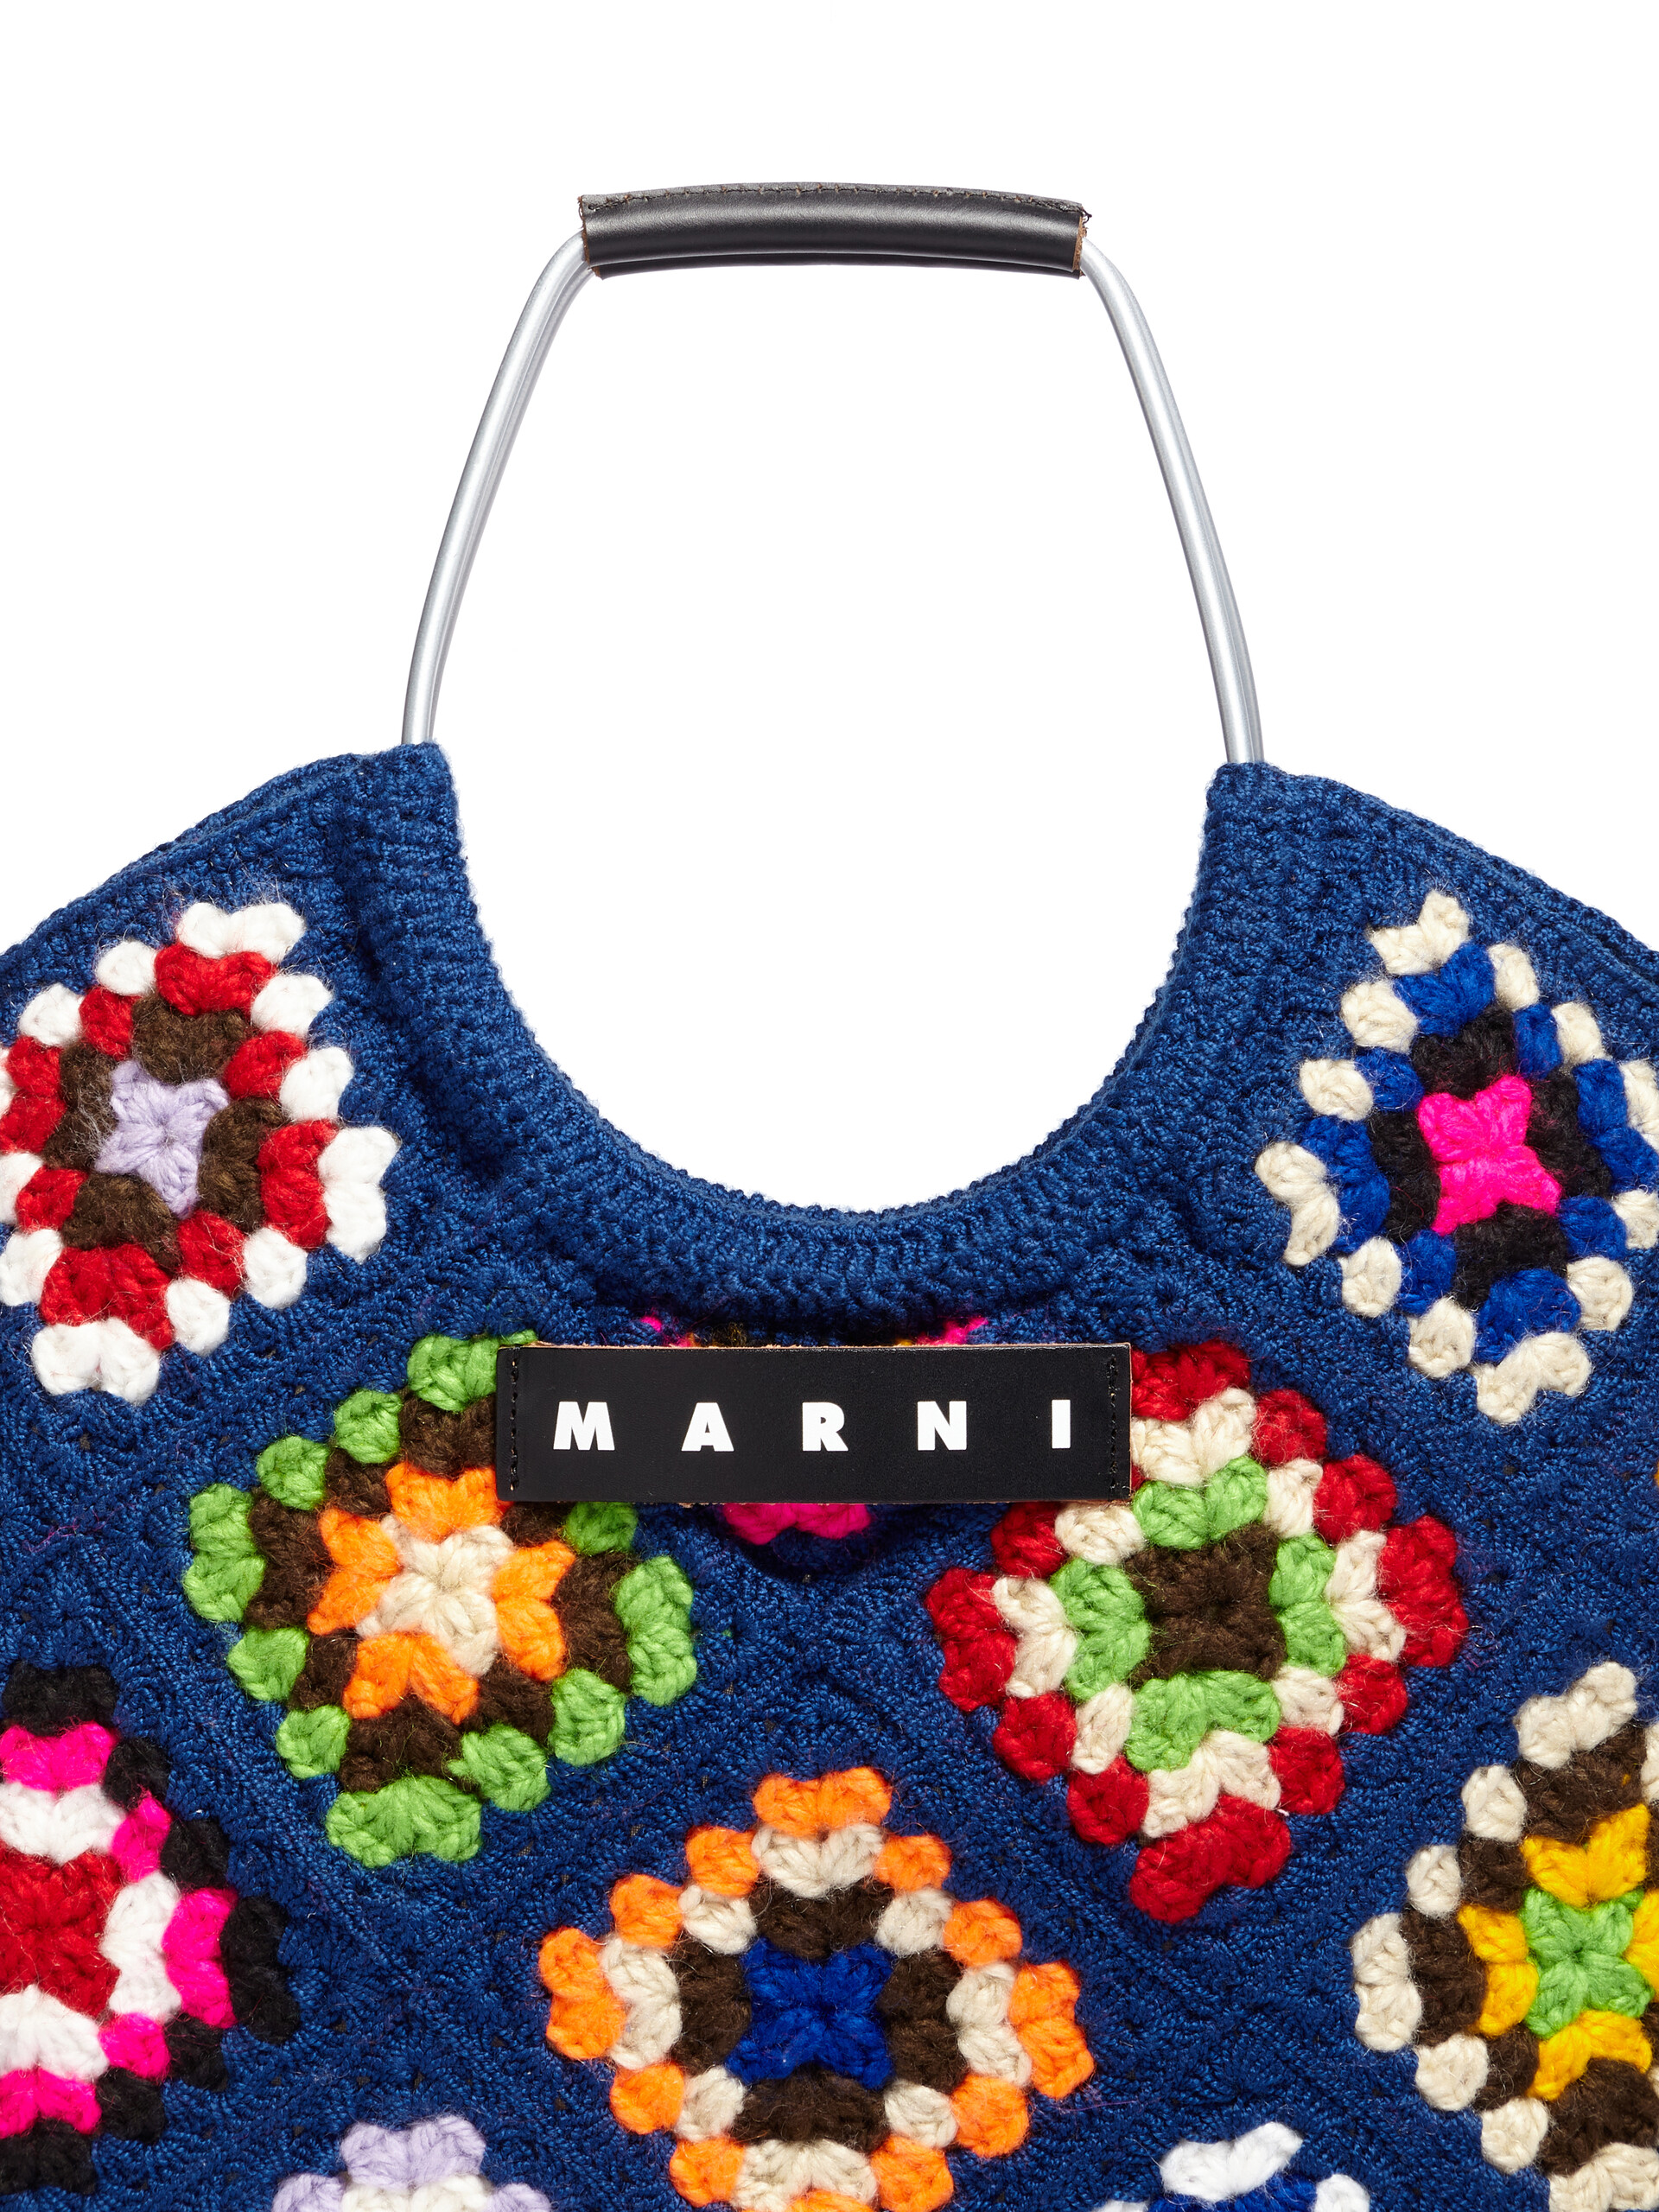 Blue Marni Market multicoloured crochet bag - Bags - Image 4